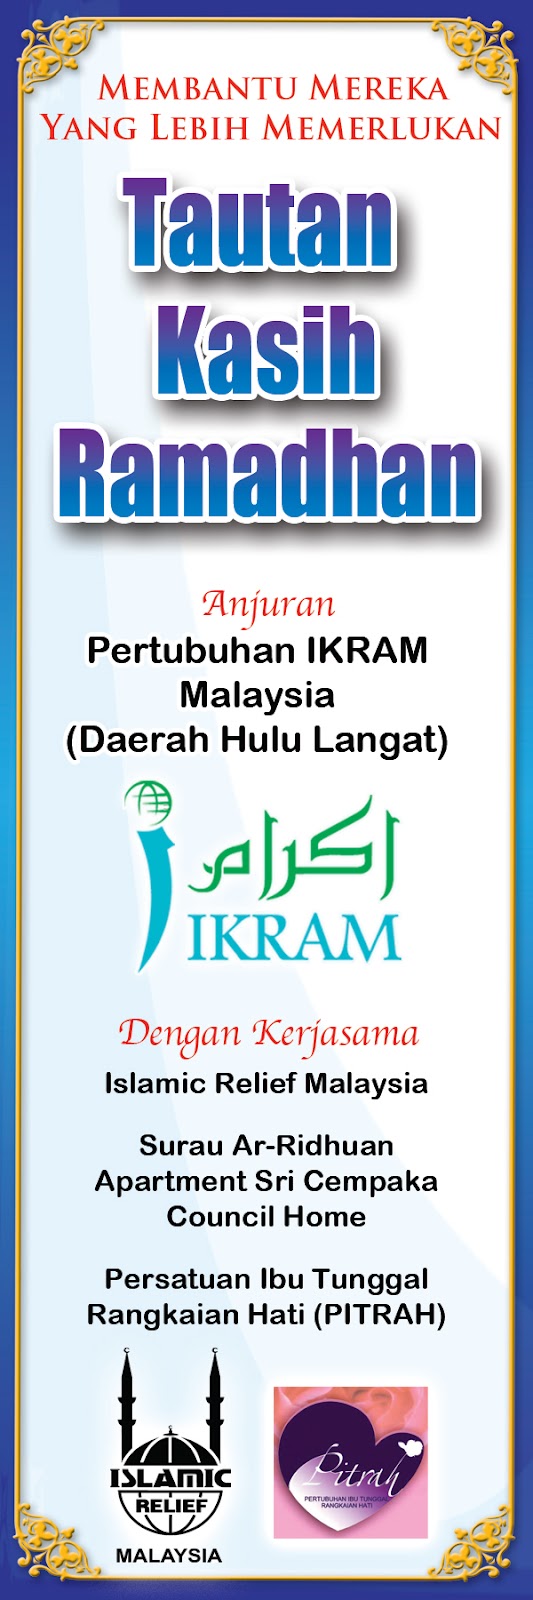 IKRAM Hulu Langat: August 2012